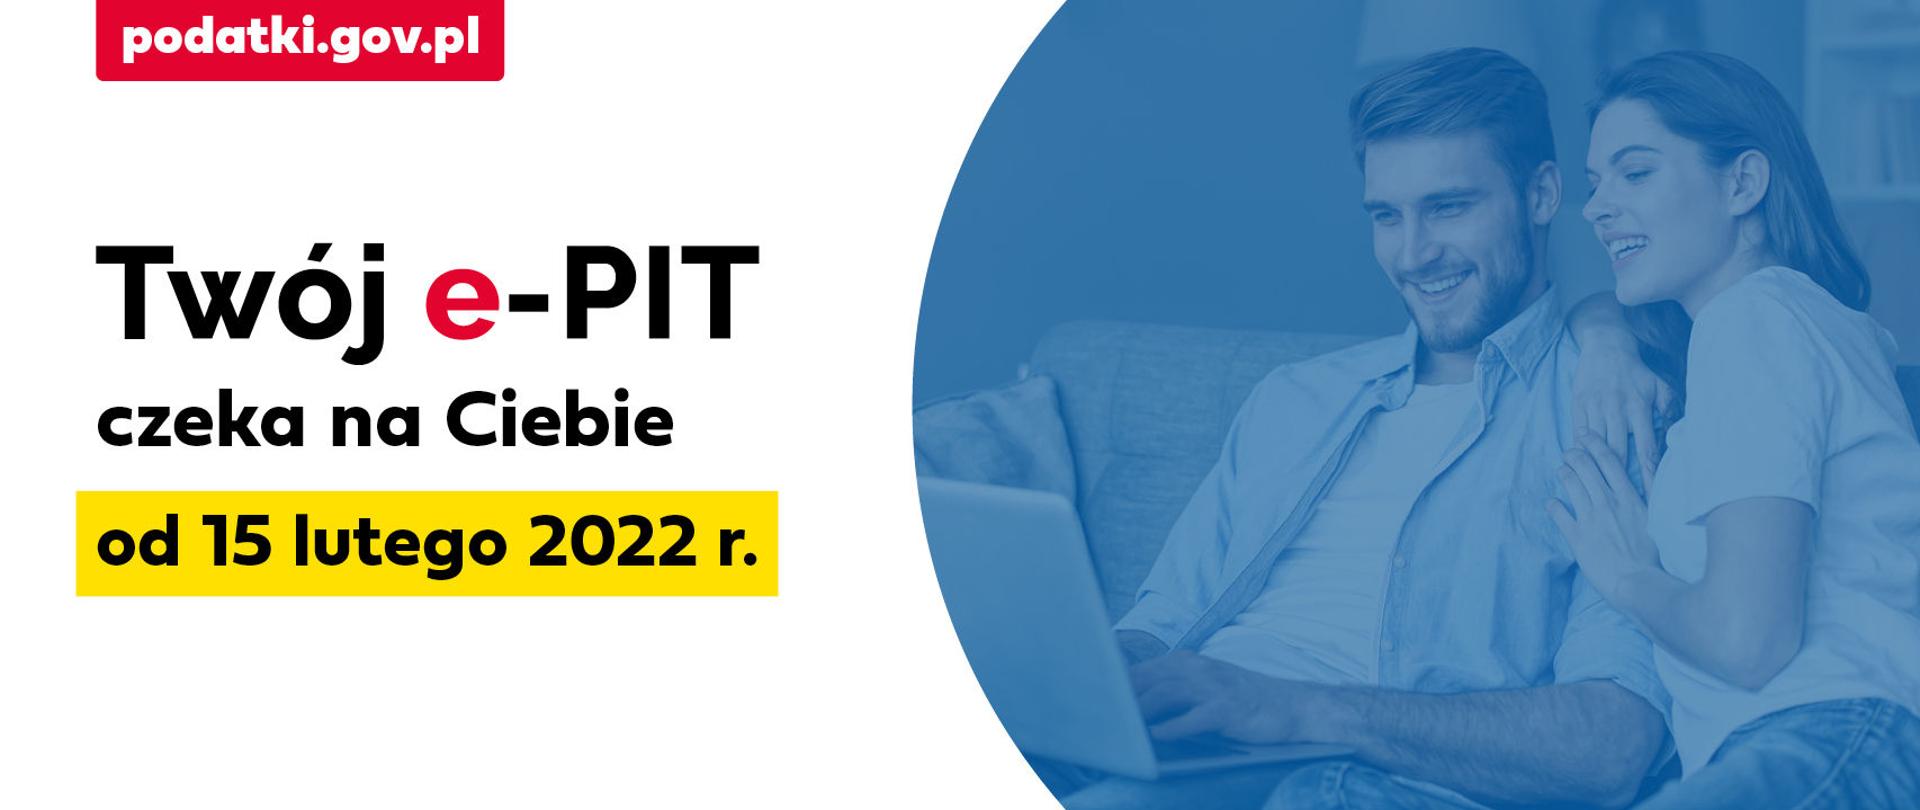 Dwie osoby przy komputerze. Napisy podatki.gov.pl, Twój e-PIT czeka na Ciebie od 15 lutego 2022 roku.